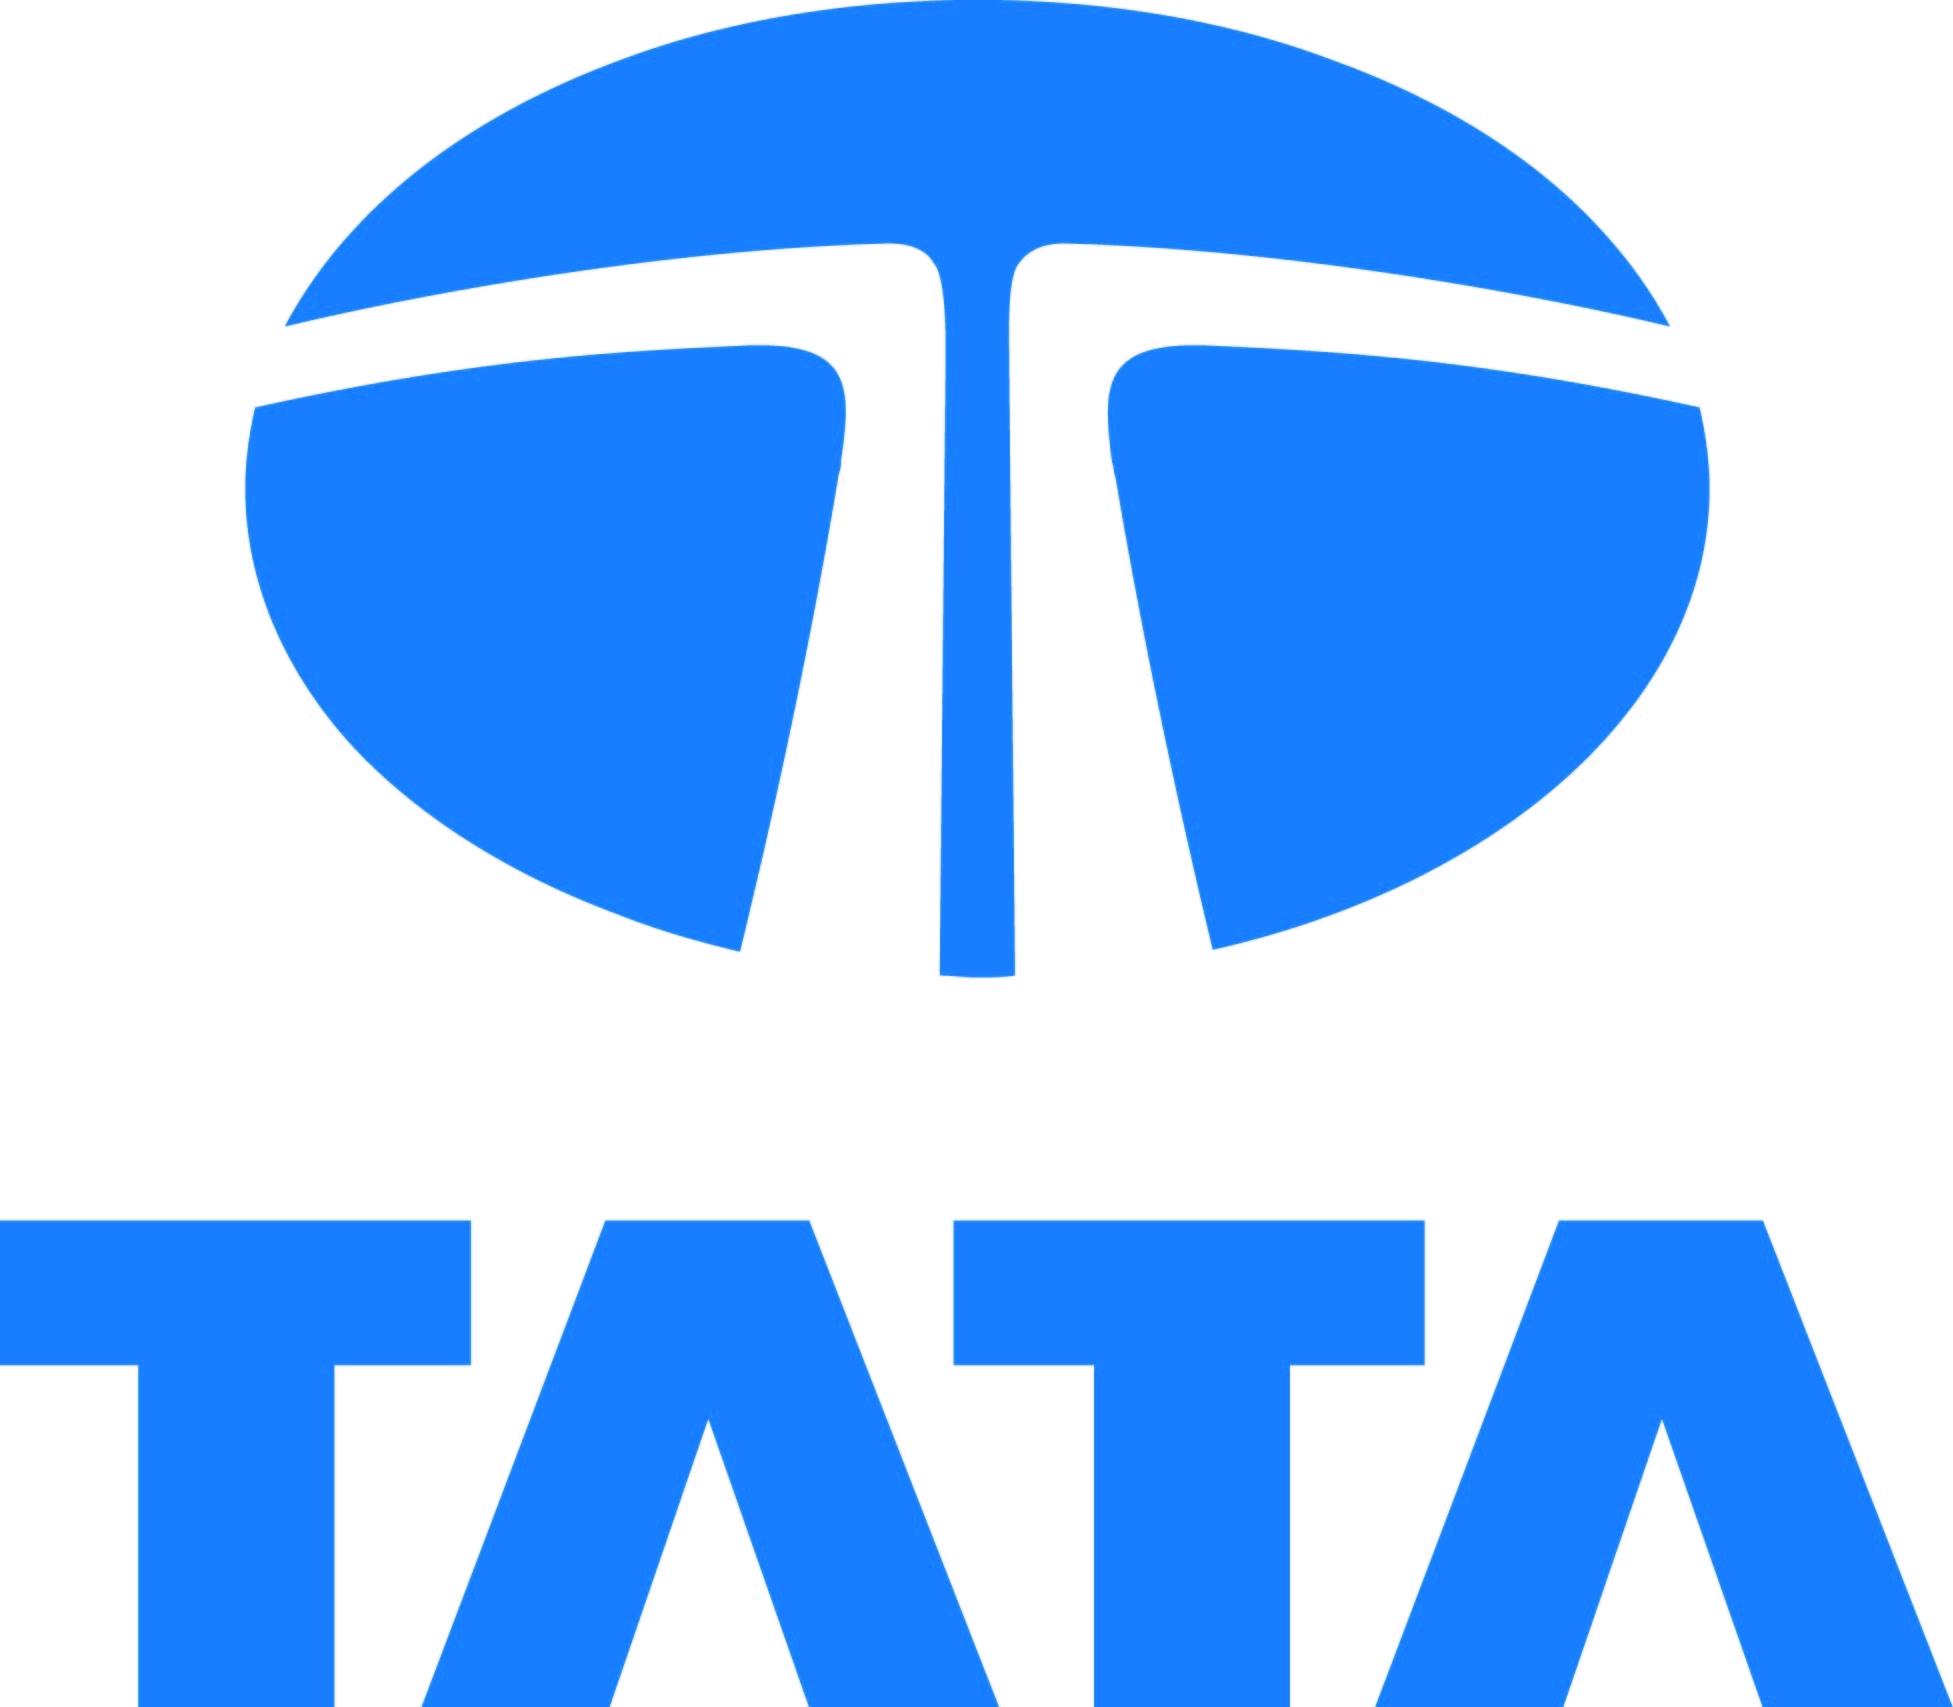 Tata Motors Logo Wallpapers